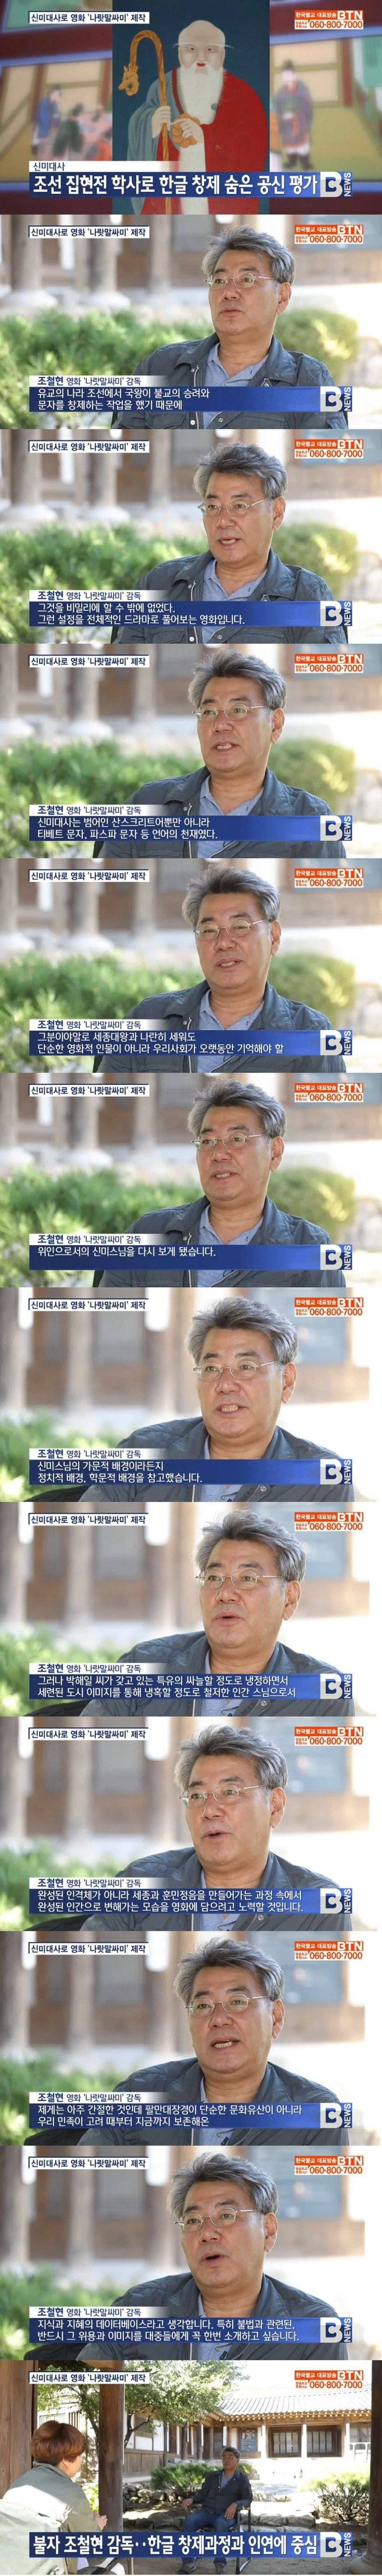 영화 나랏말싸미 감독의 불교방송 인터뷰..jpg | 인스티즈